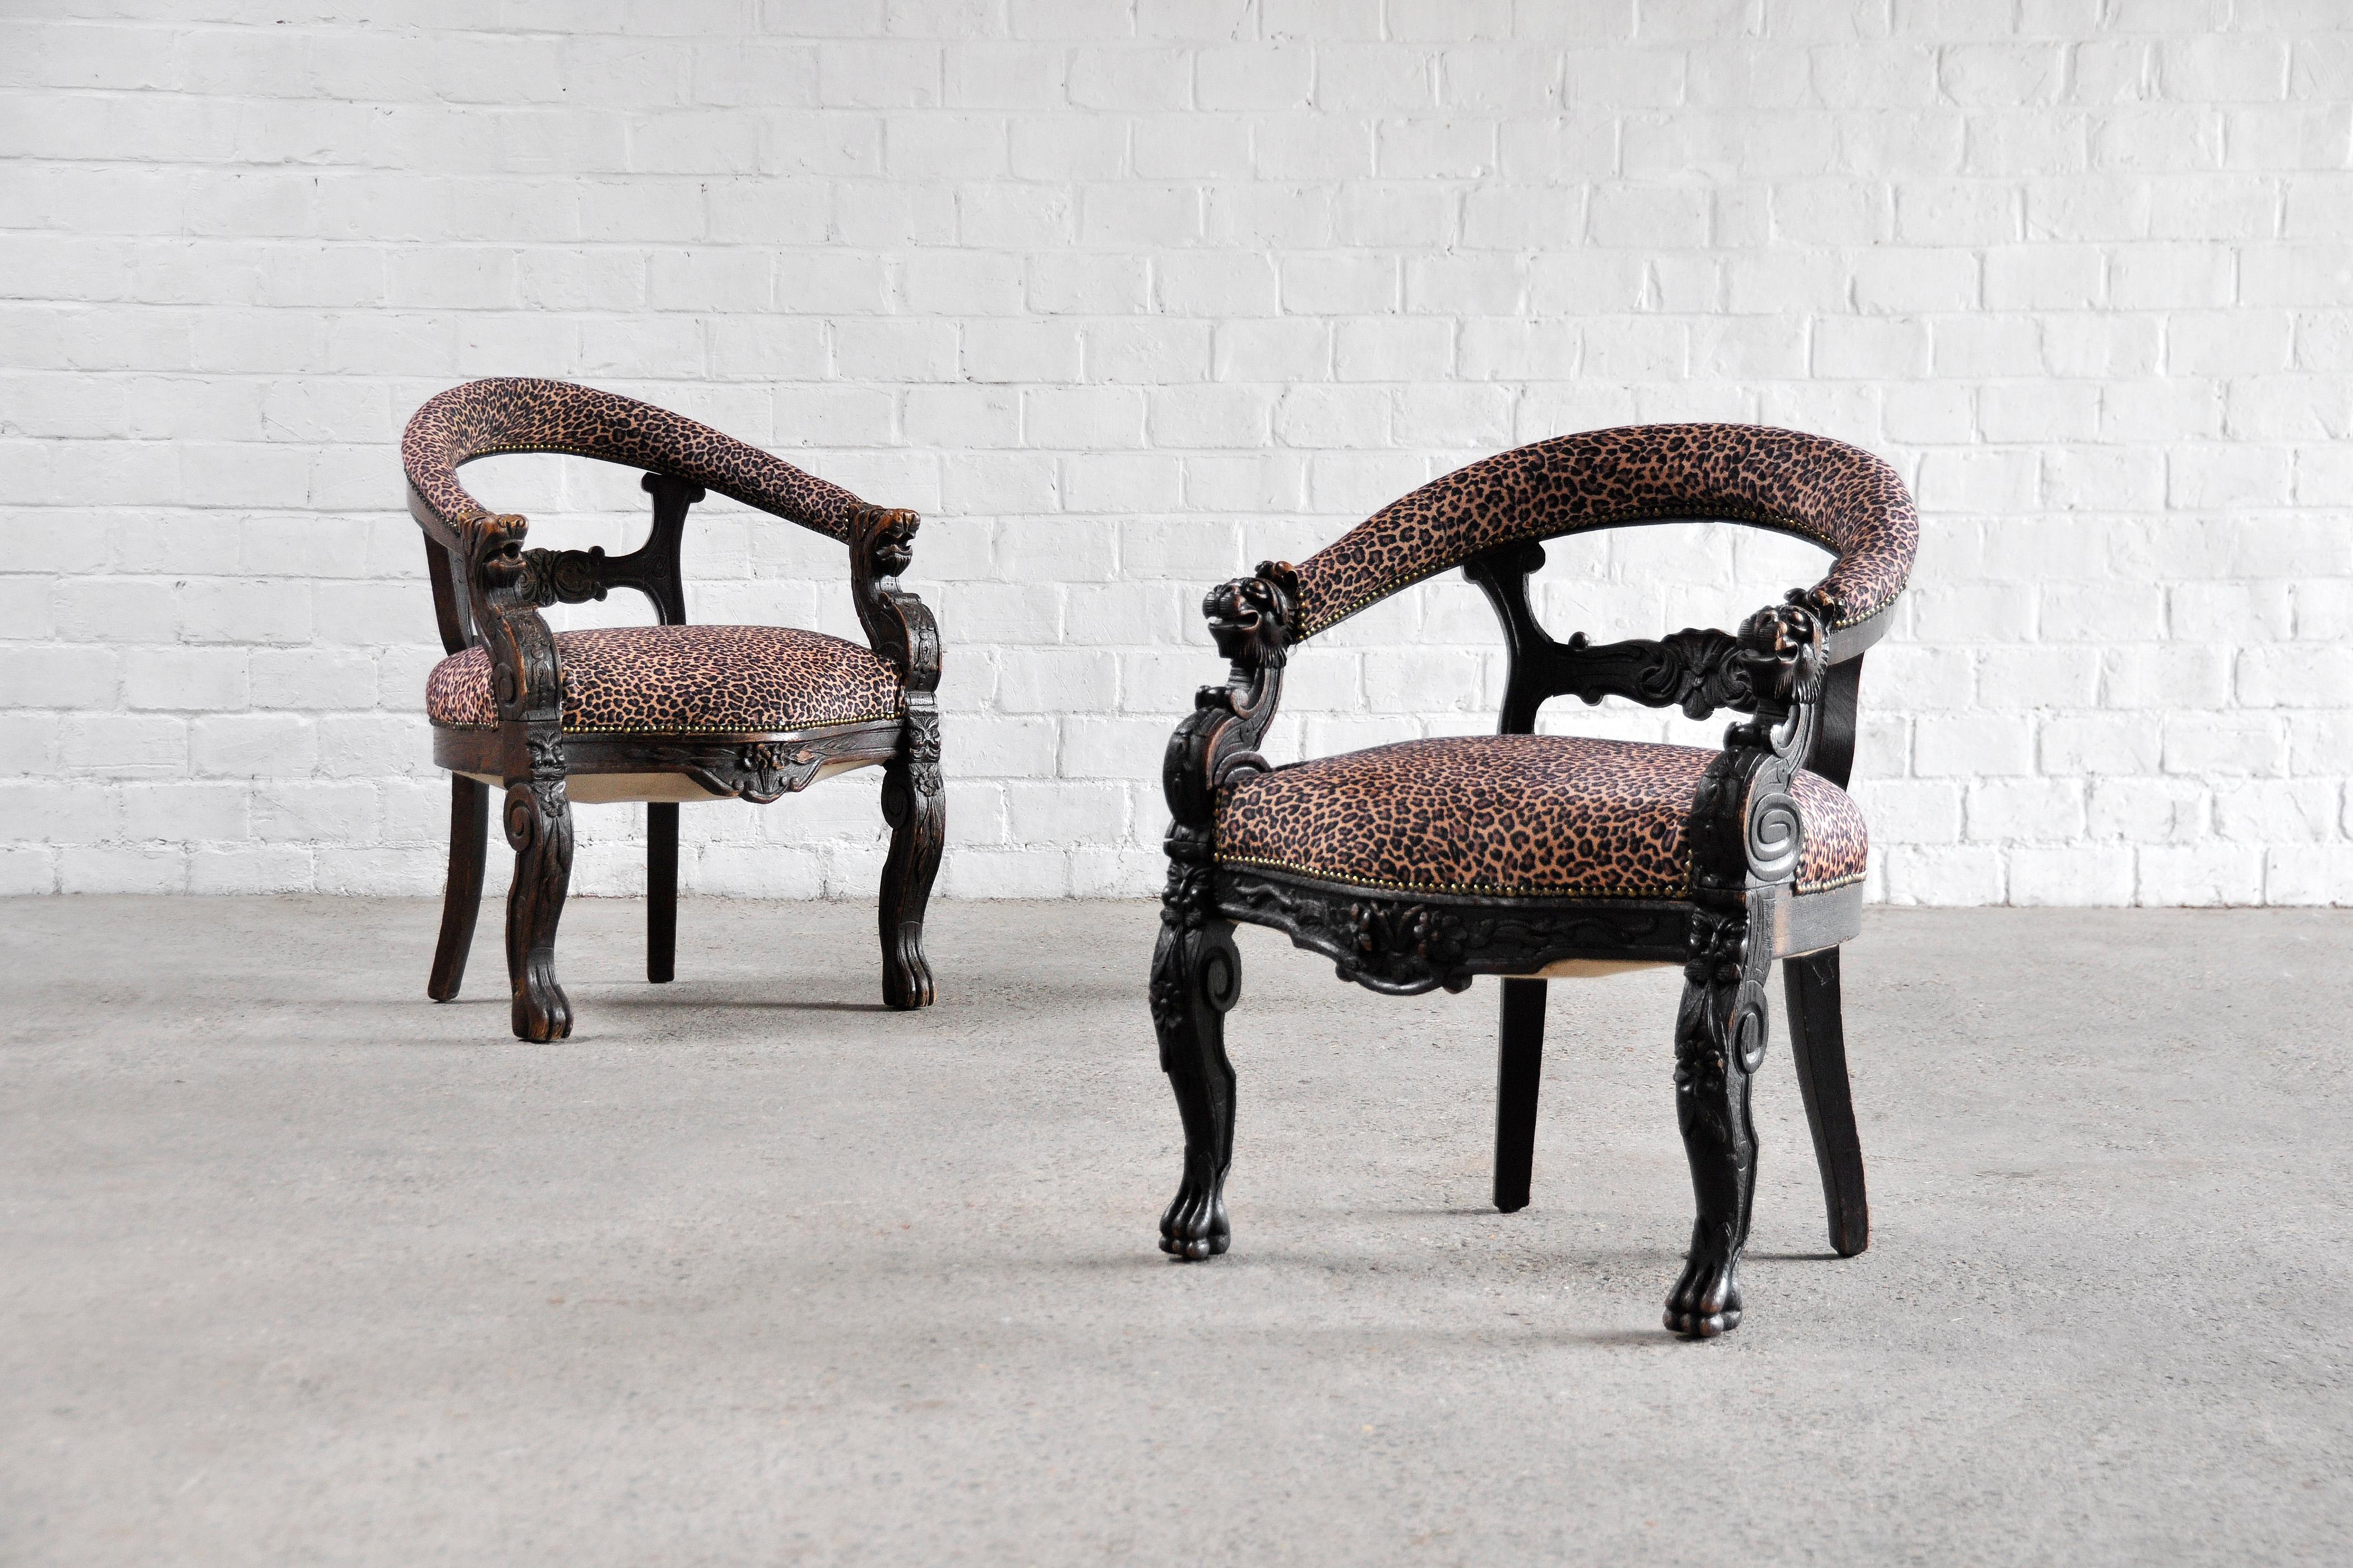 Une paire de chaises presque identiques de style Renaissance avec des cadres richement sculptés. Ces chaises tubulaires en chêne ont été fabriquées au XIXe siècle. Les chaises sont recouvertes d'un revêtement plus récent avec un imprimé d'imitation